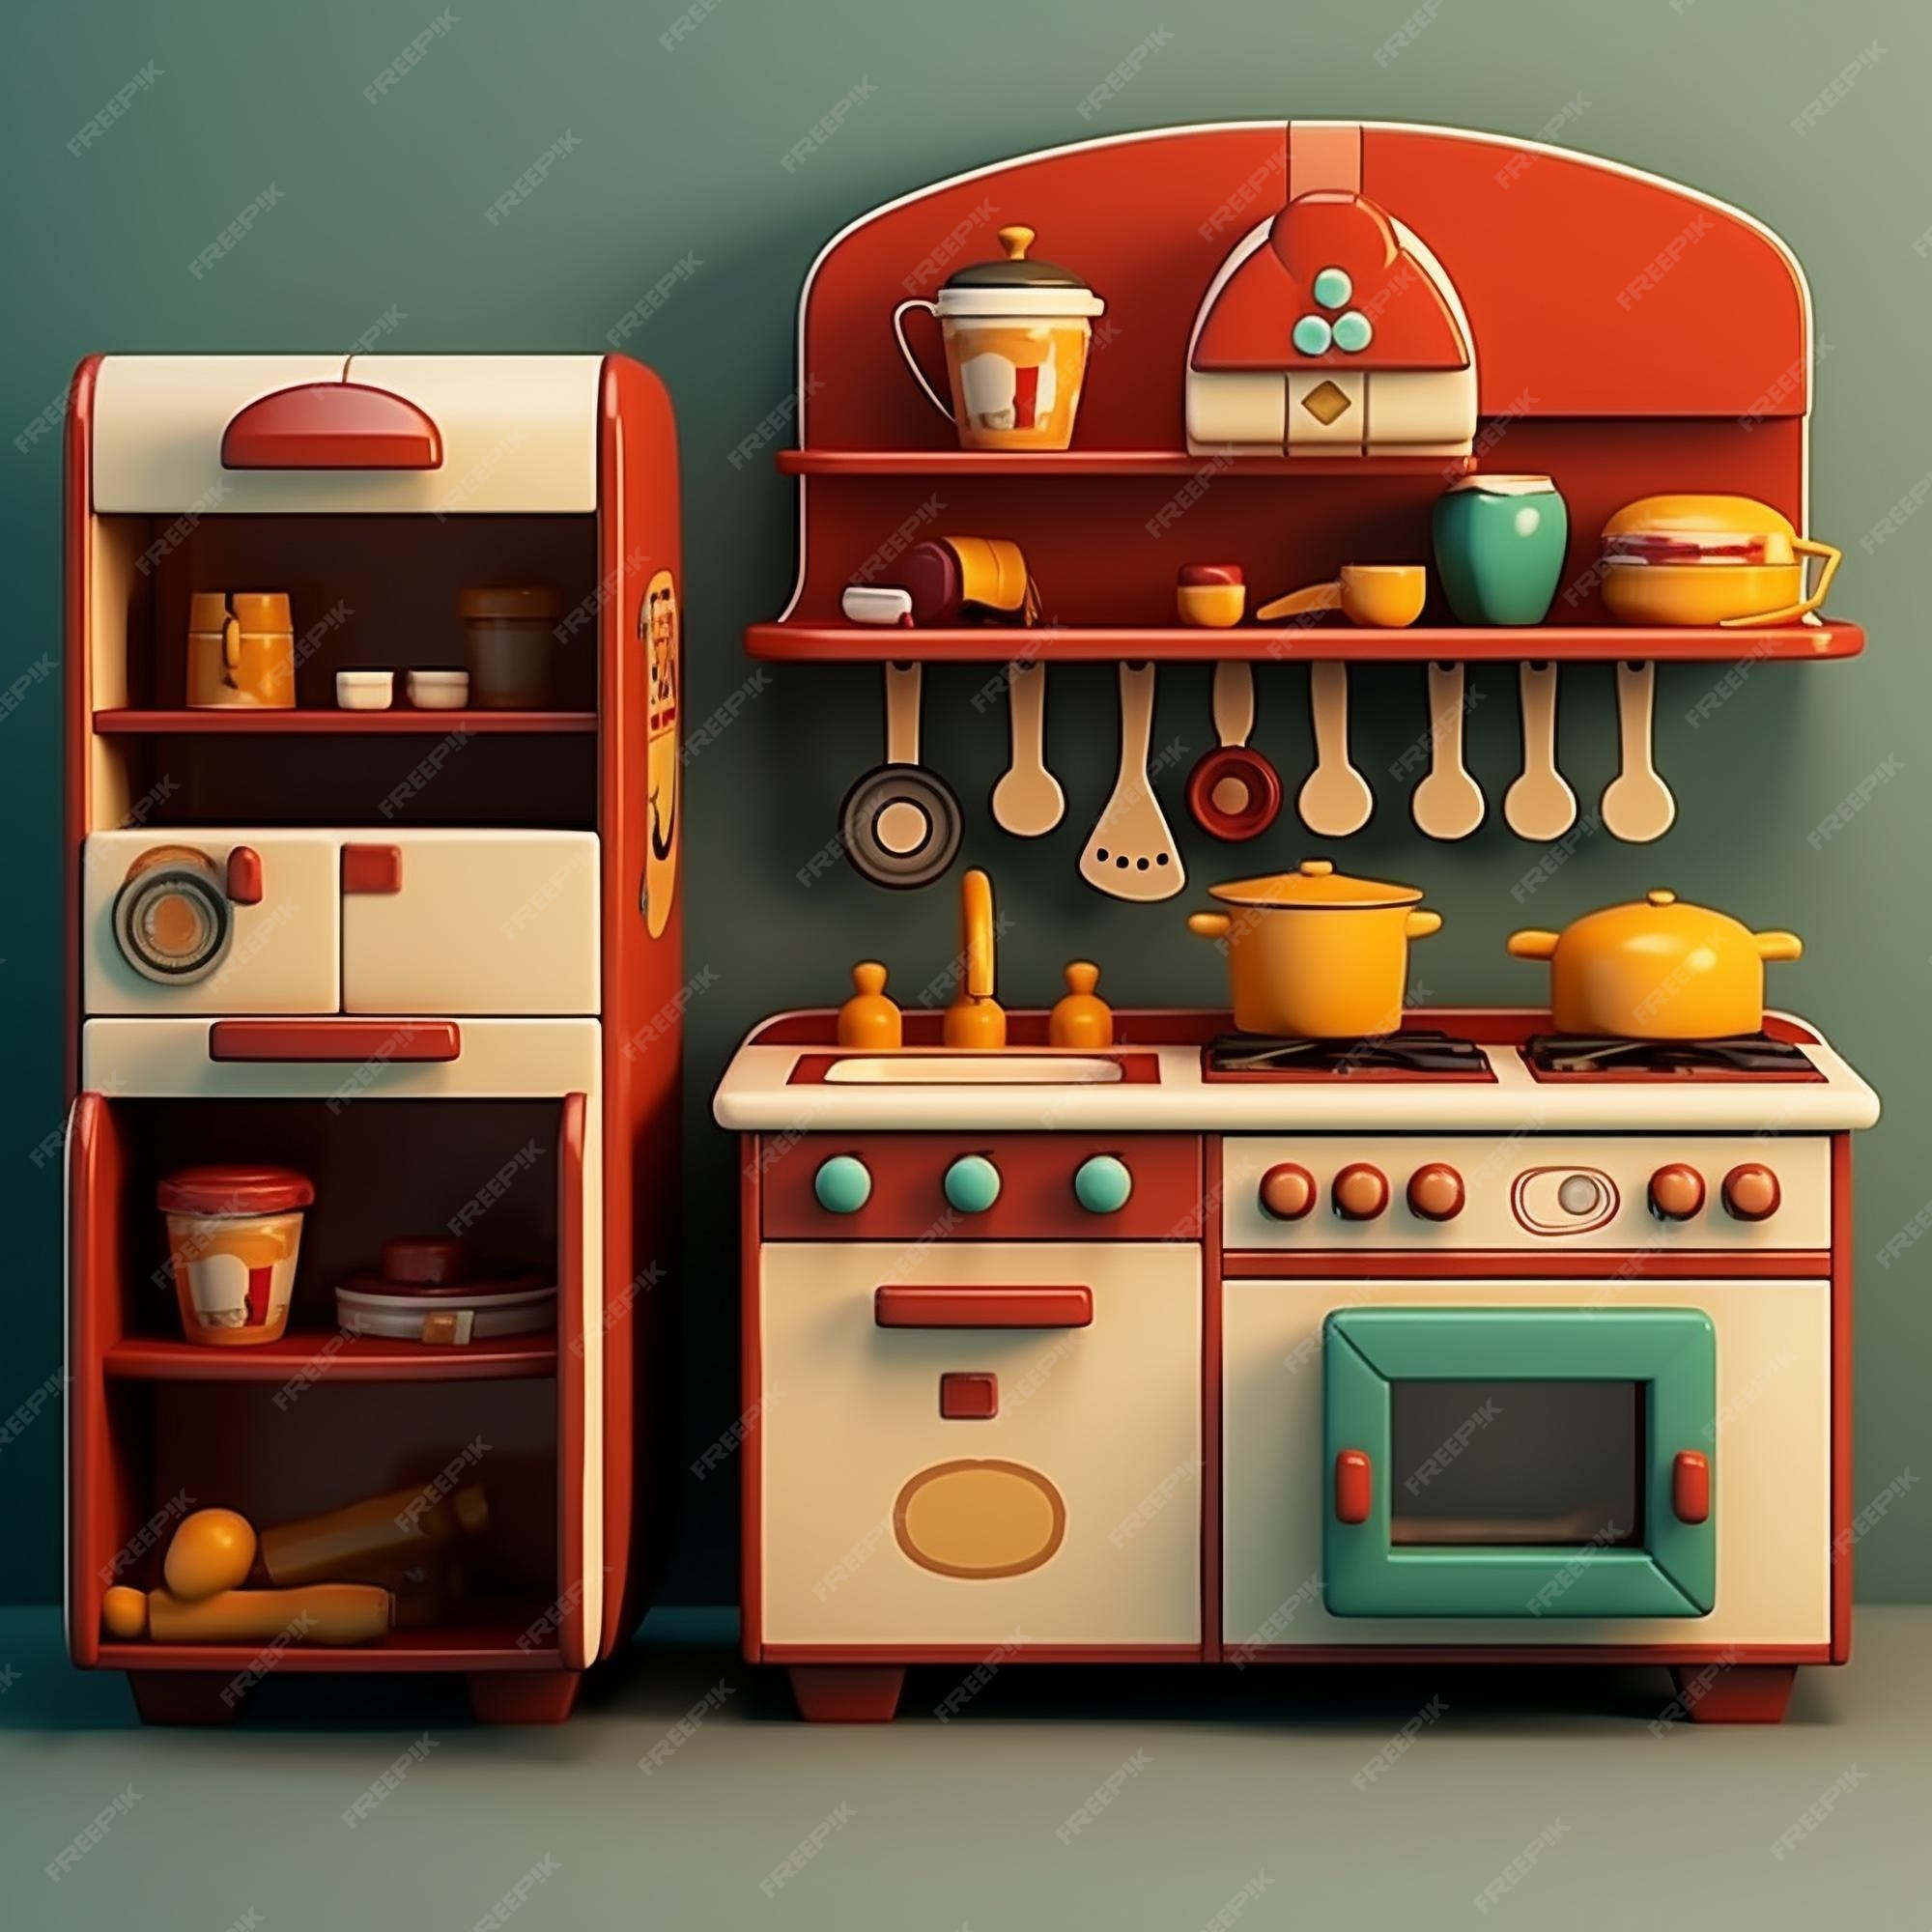 Juegos de cocina de juguete de dibujos animados 3d